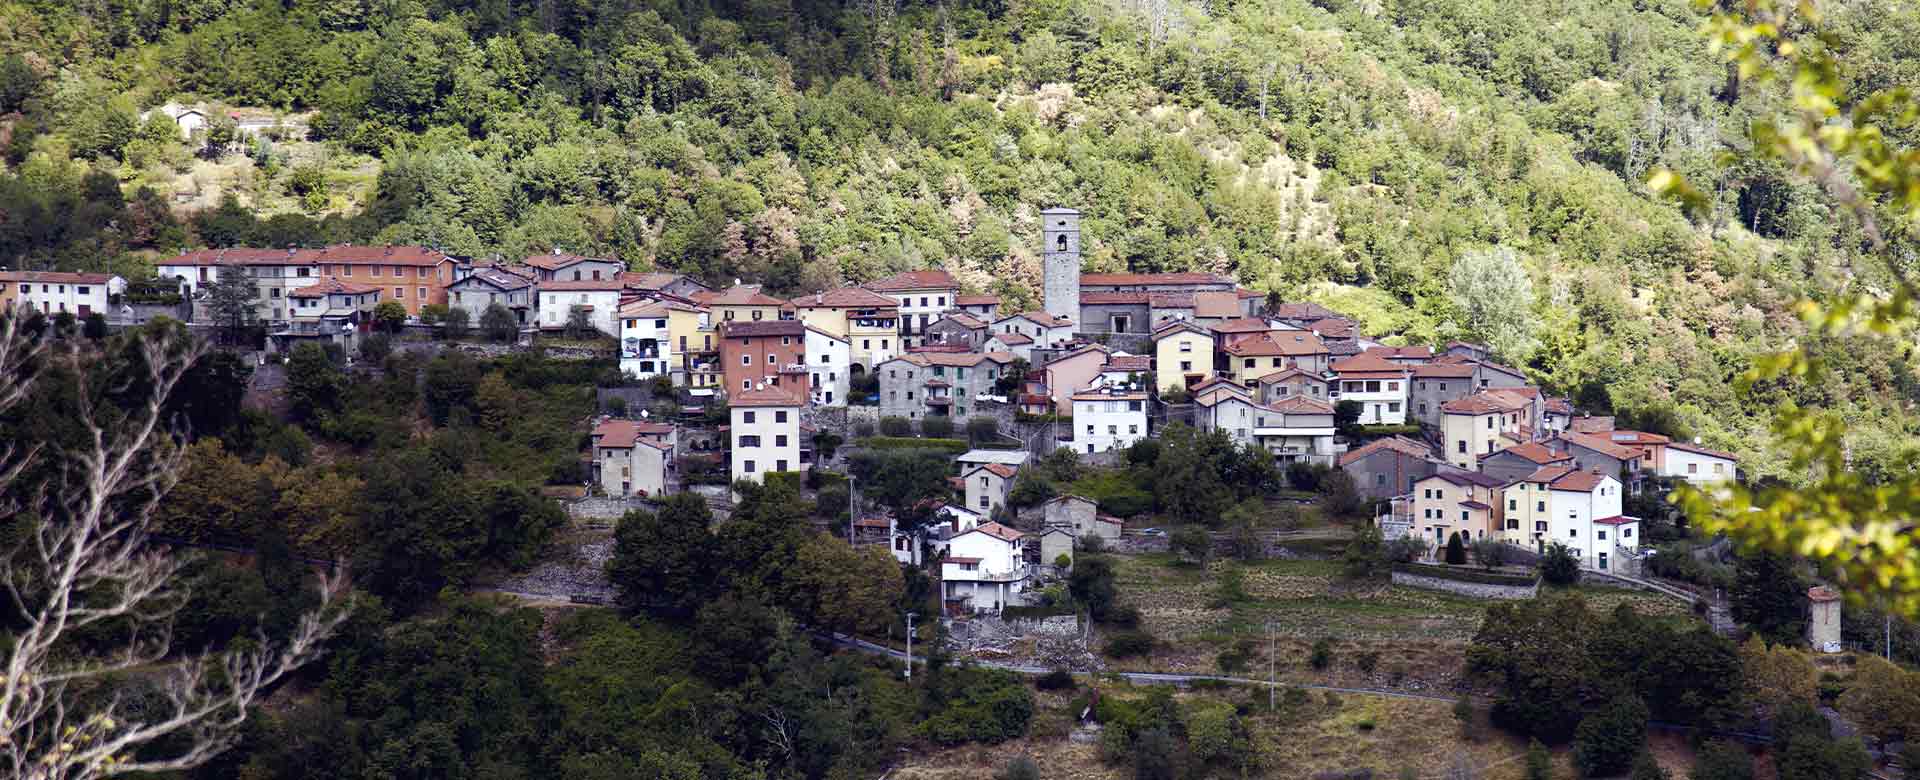 Immagine del borgo Vergemoli (LU)